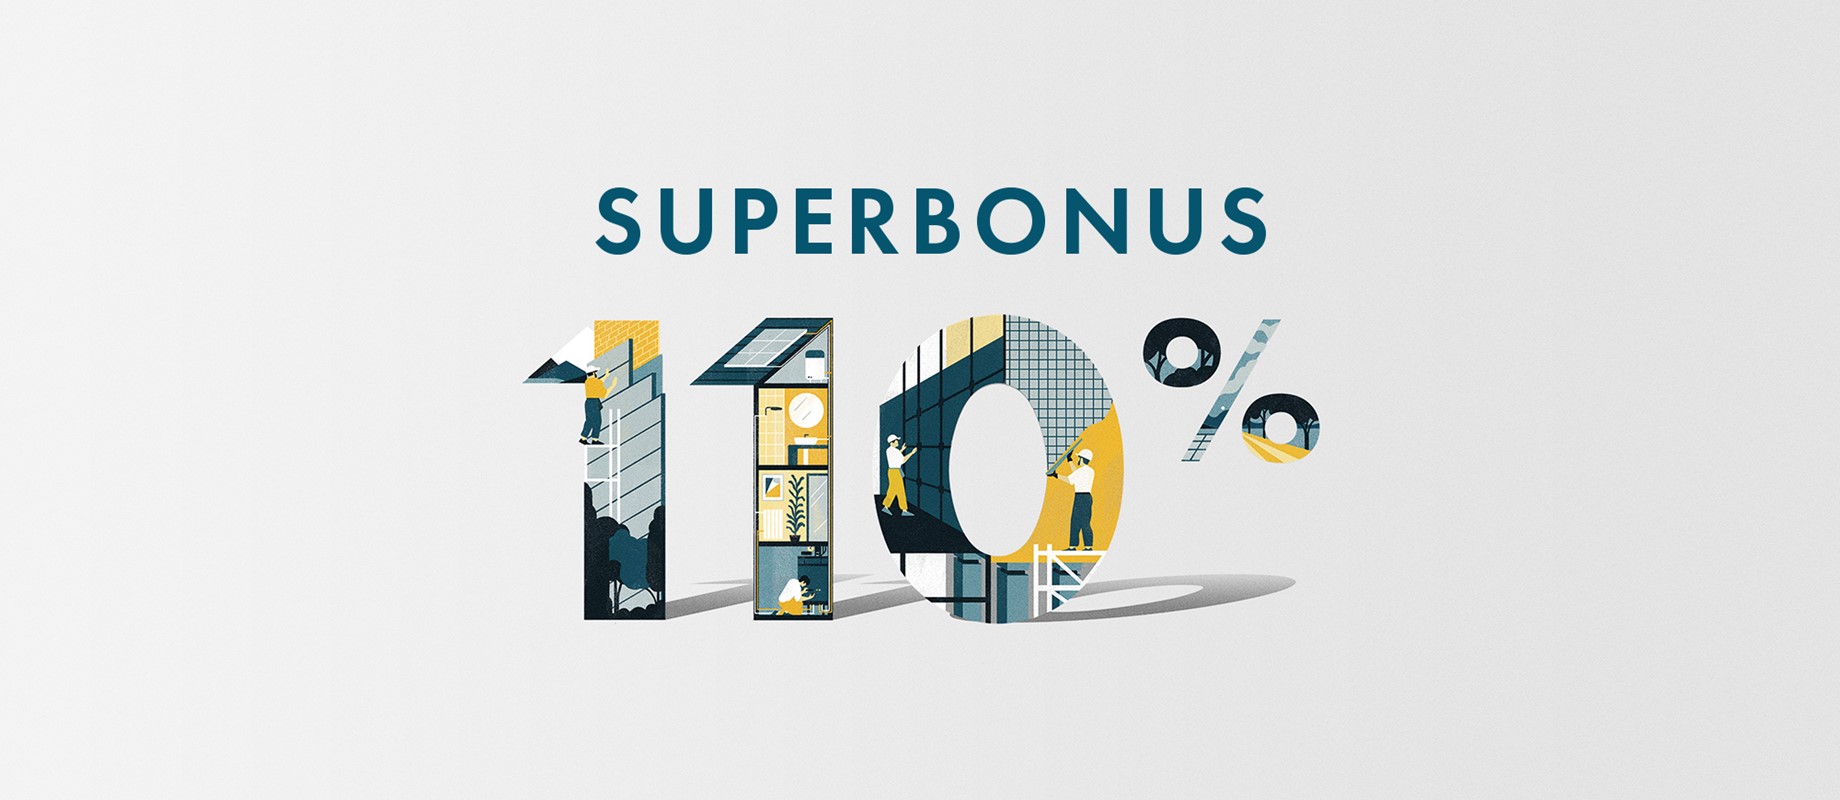 Detrazione fiscale fino al 110% della spesa: approfitta del Superbonus 110%. 